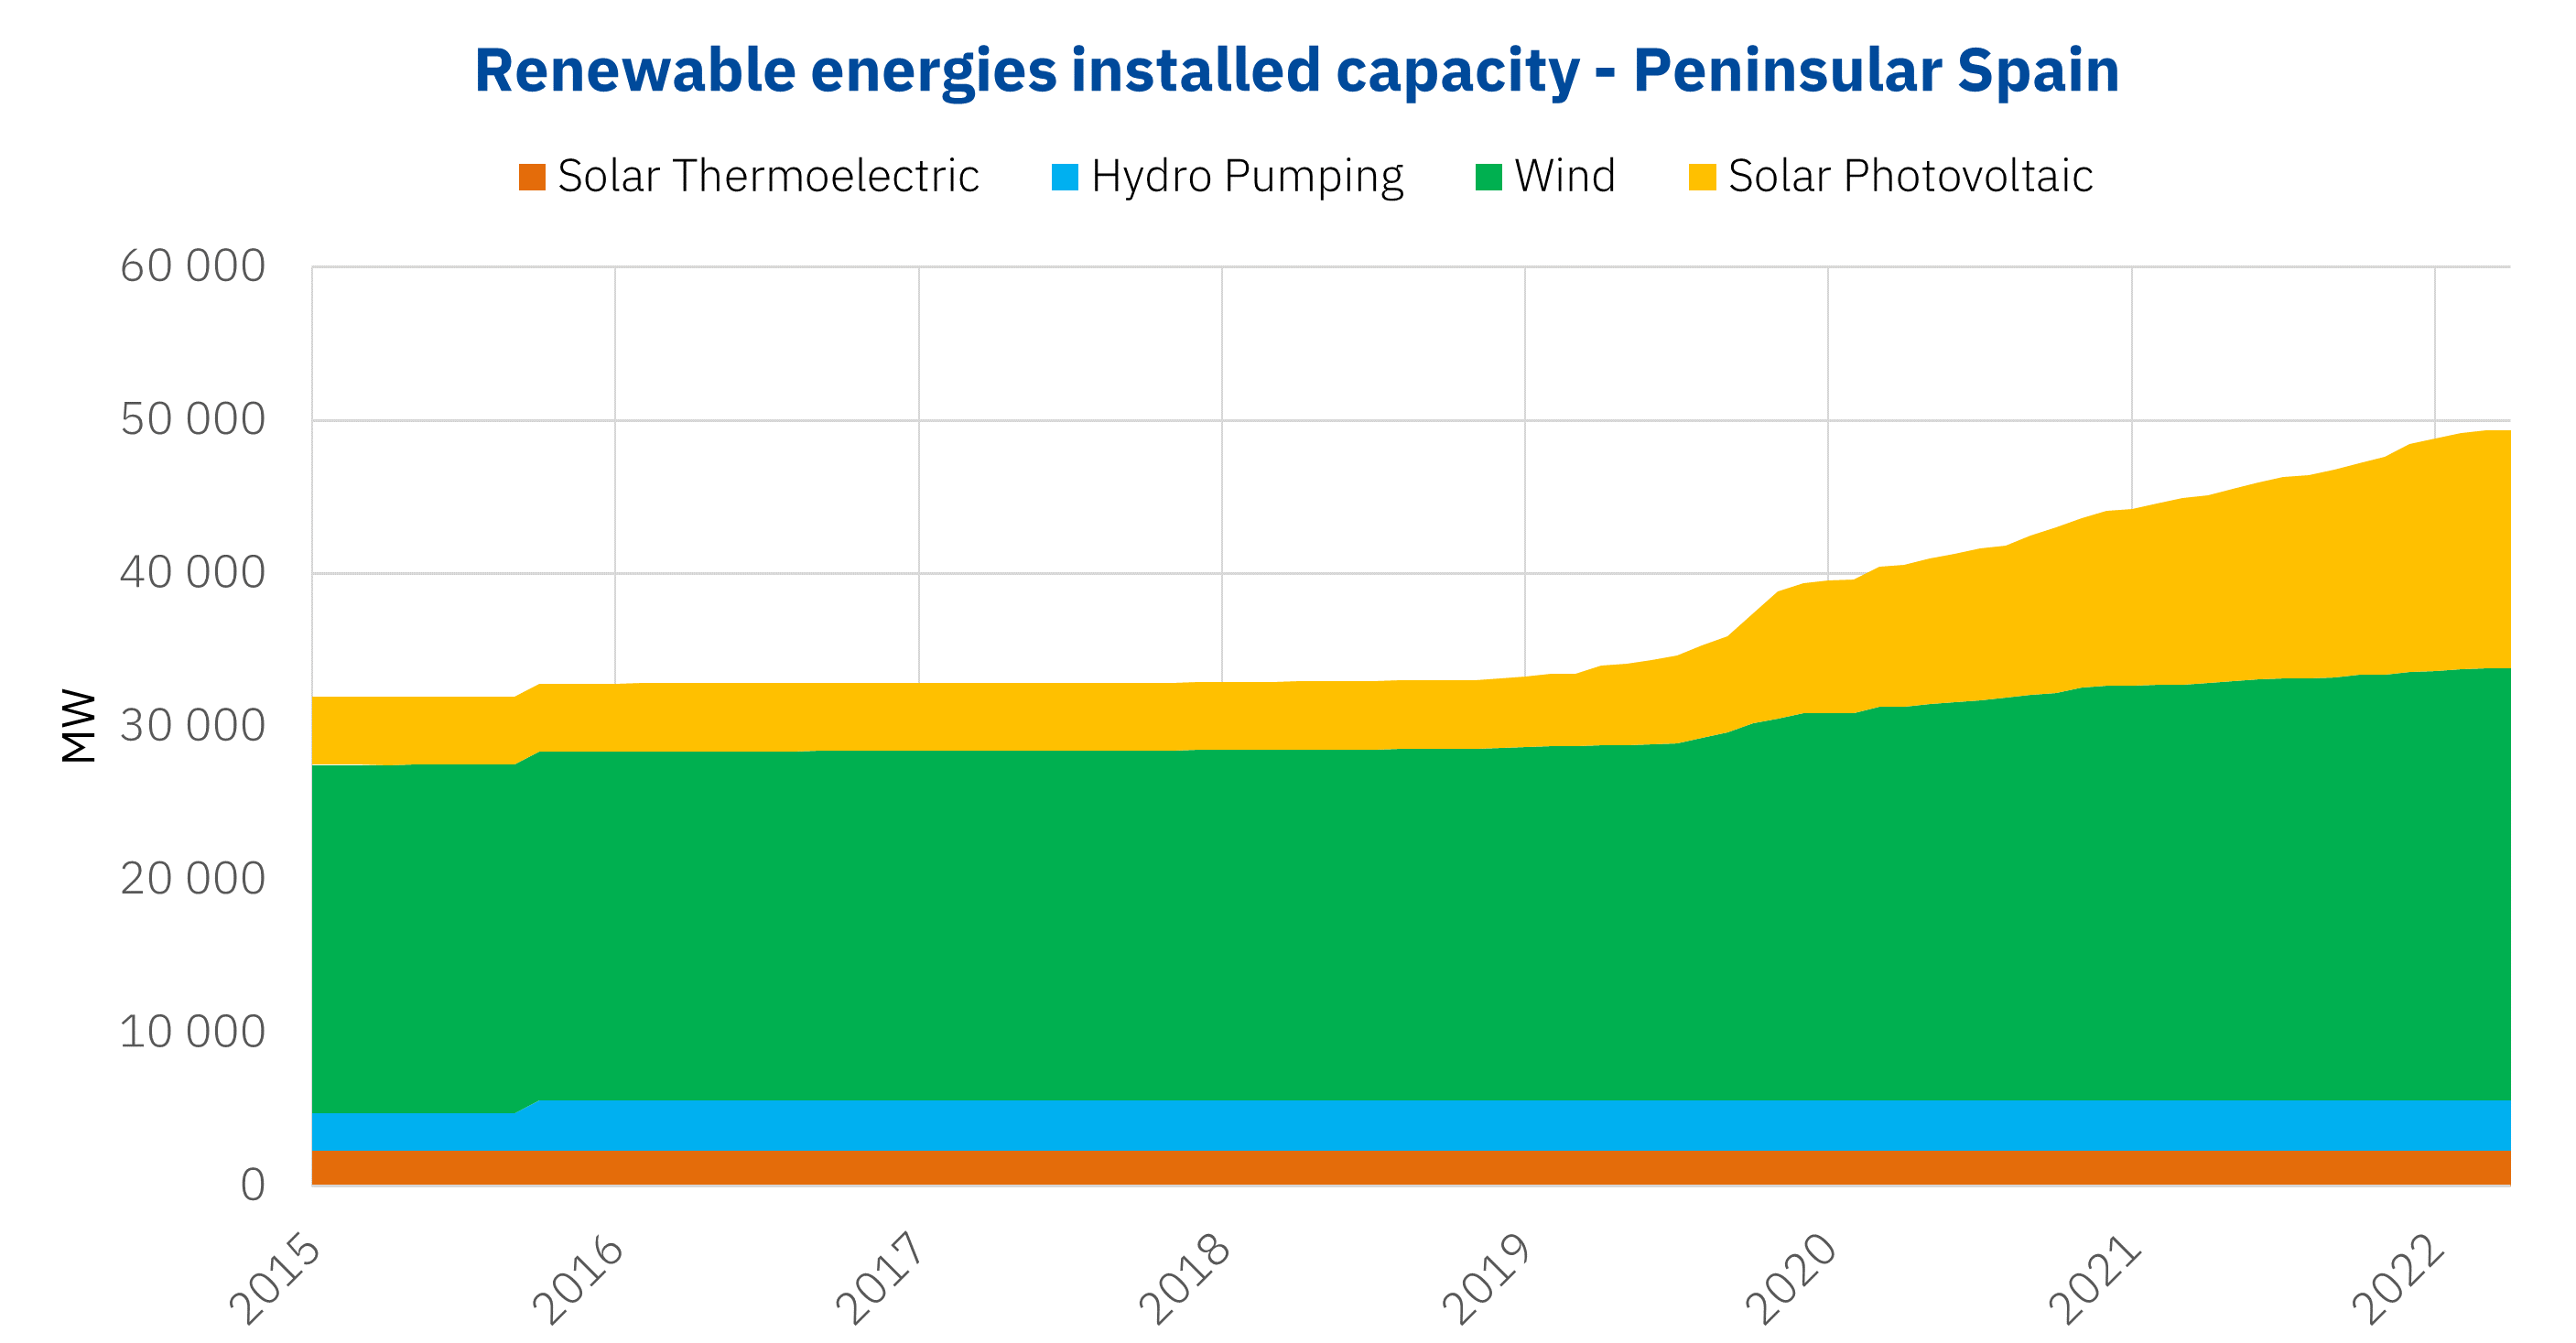 AleaSoft - Installed capacity renewable energies Spain